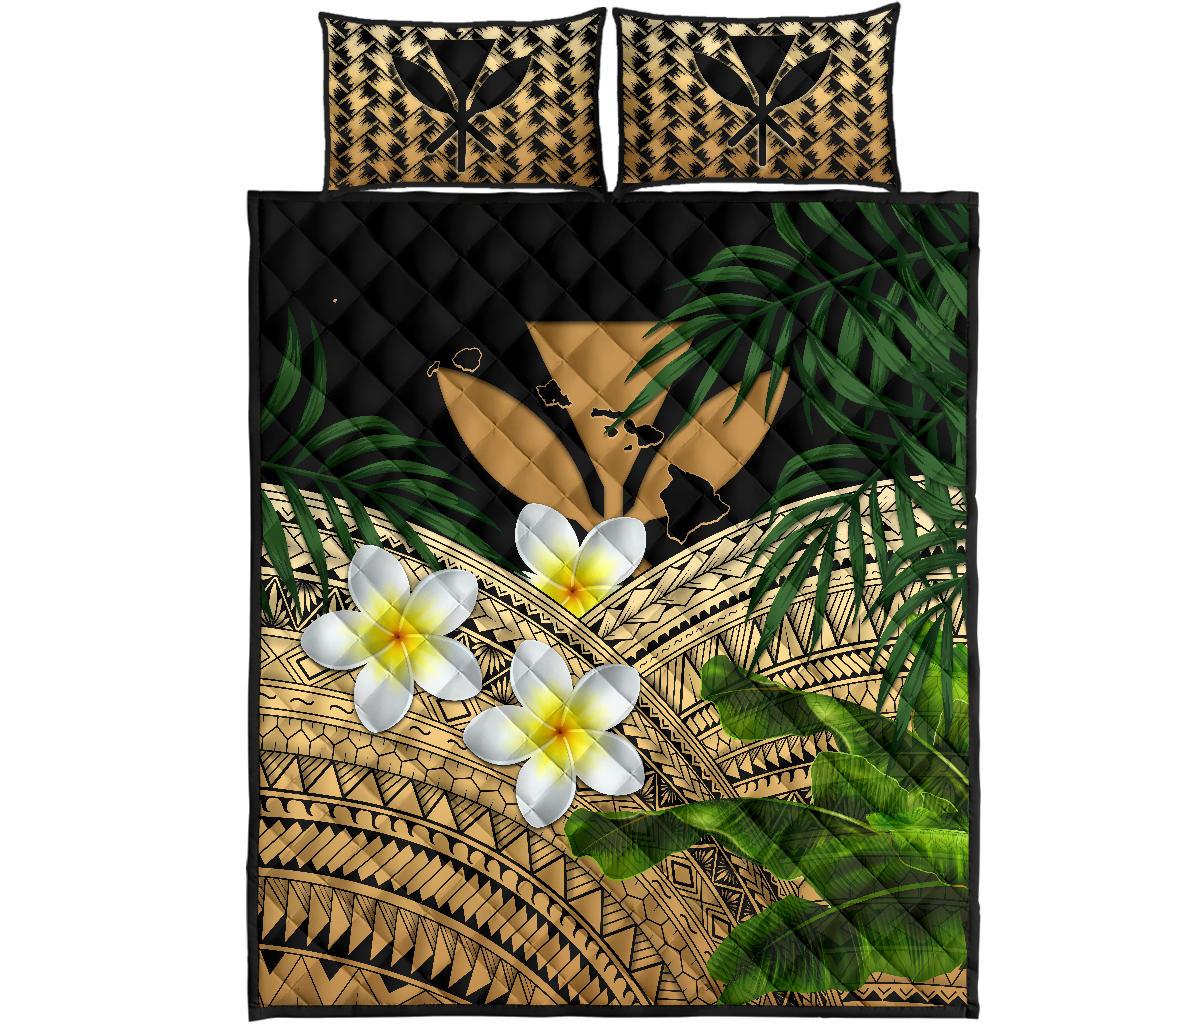 Kanaka Maoli (Hawaiian) Quilt Bed Set, Polynesian Plumeria Banana Leaves Gold Gold - Polynesian Pride